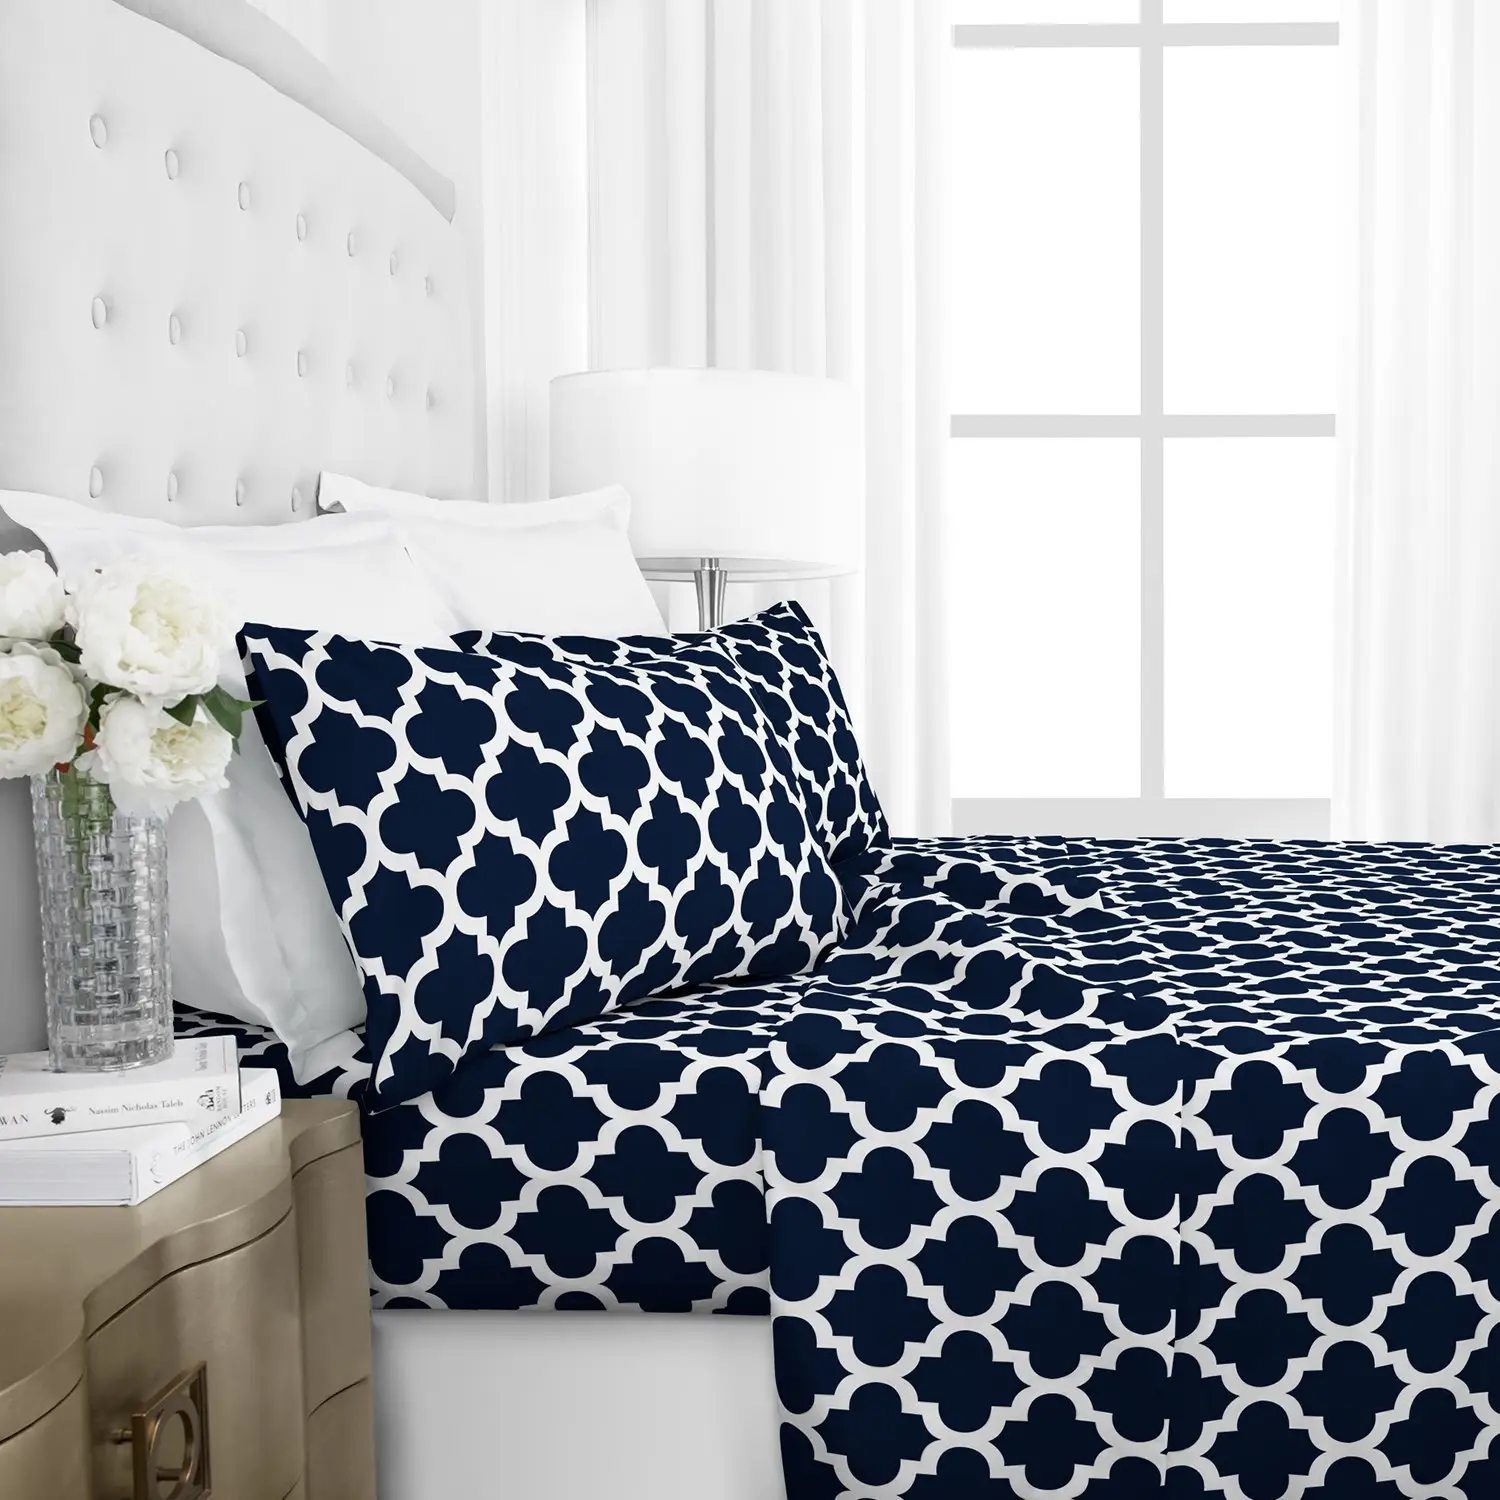 OEM/ODM के साथ अमेरिकी आकार नीले बिस्तर कवर बिस्तर शीट तकिया कवर धकेल दिया microfiber चादर pillowcase सेट